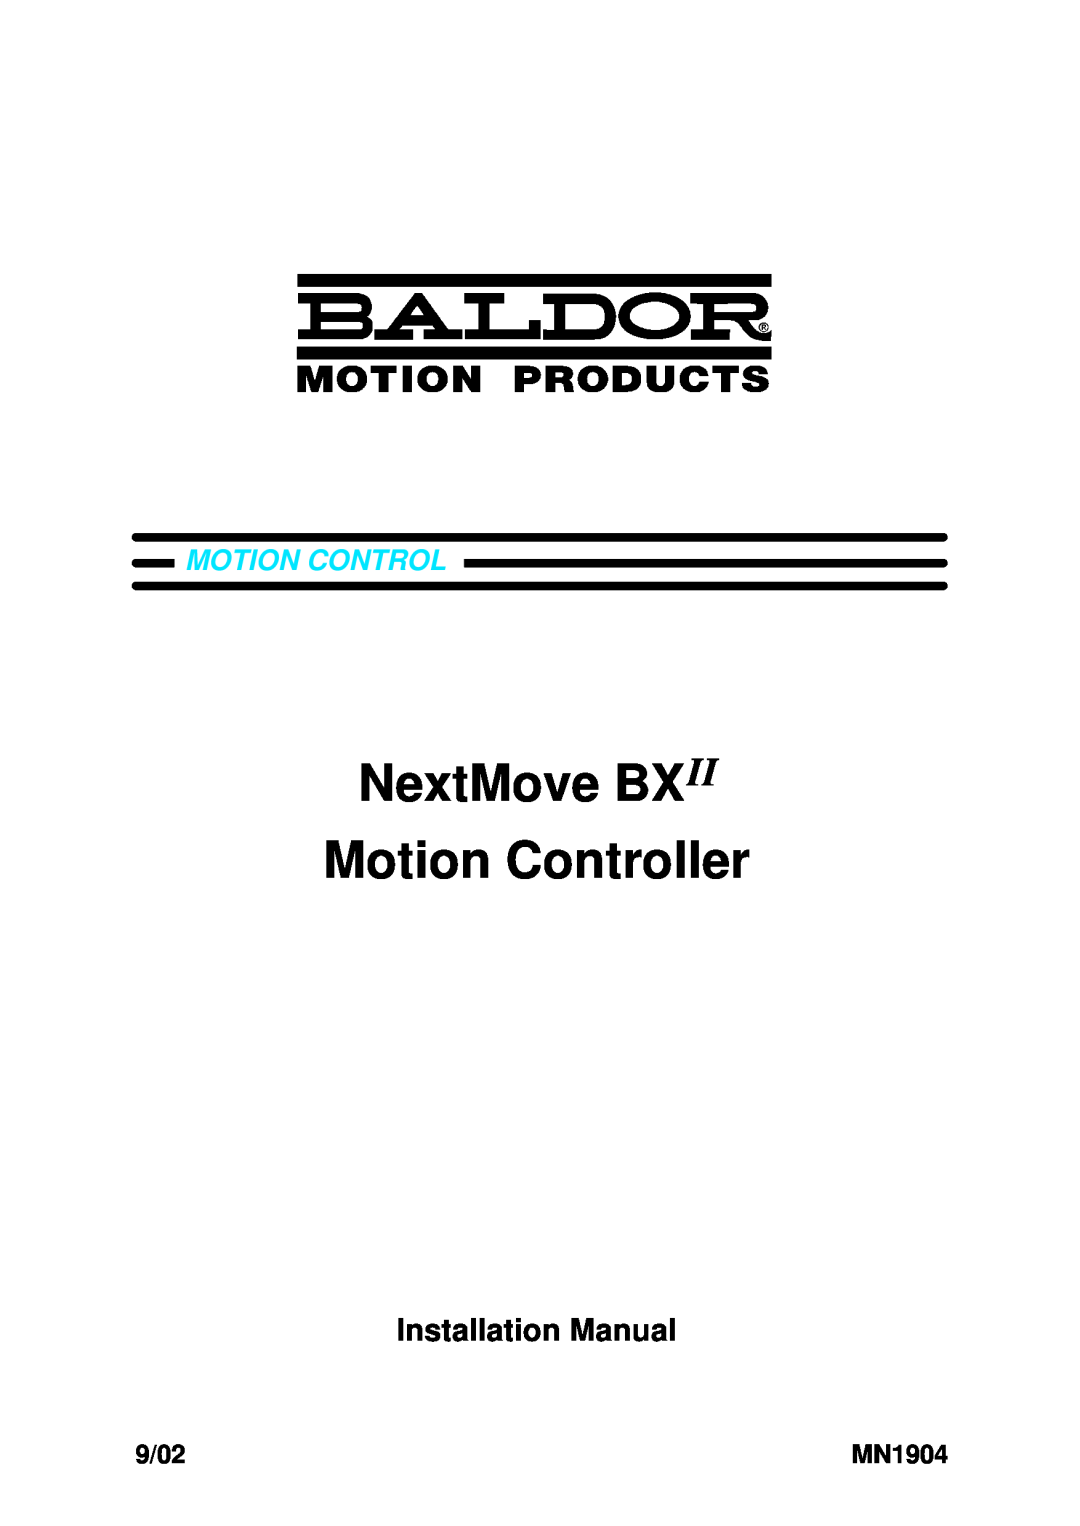 Baldor installation manual NextMove BXII Motion Controller, Installation Manual, 9/02, MN1904 